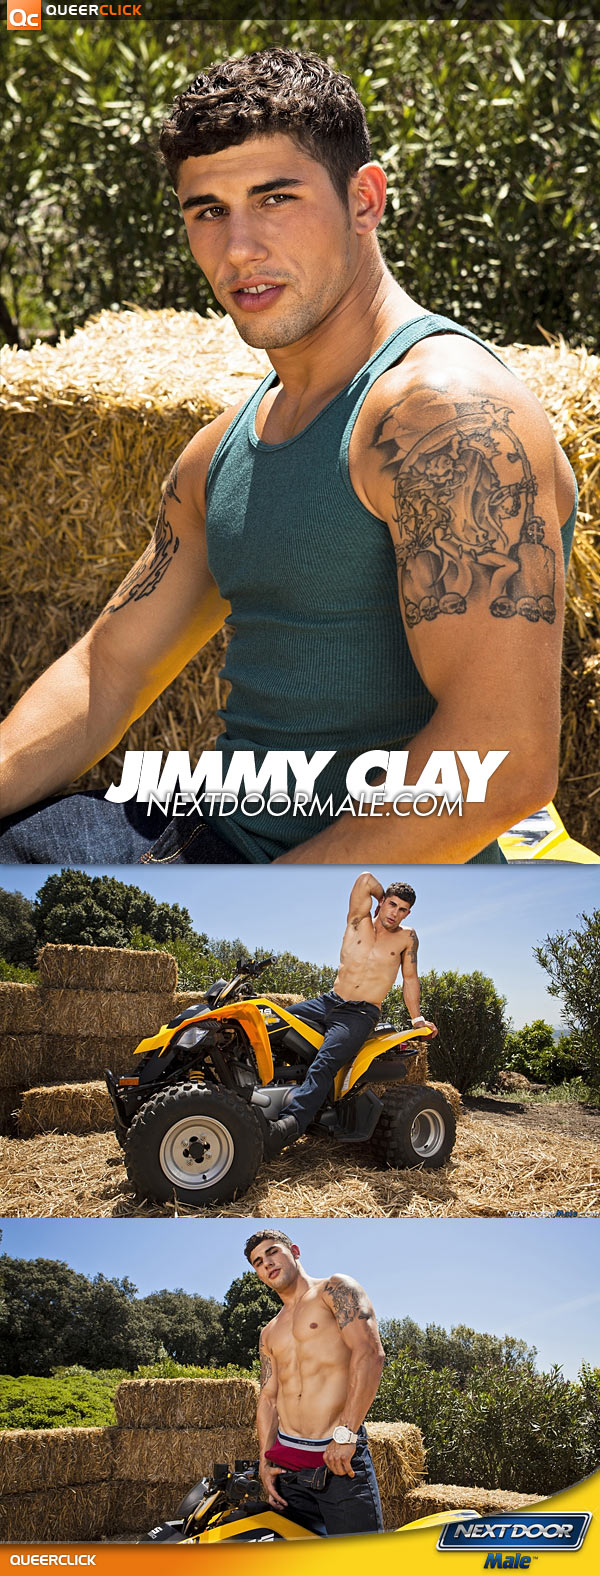 Next Door Male: Jimmy Clay